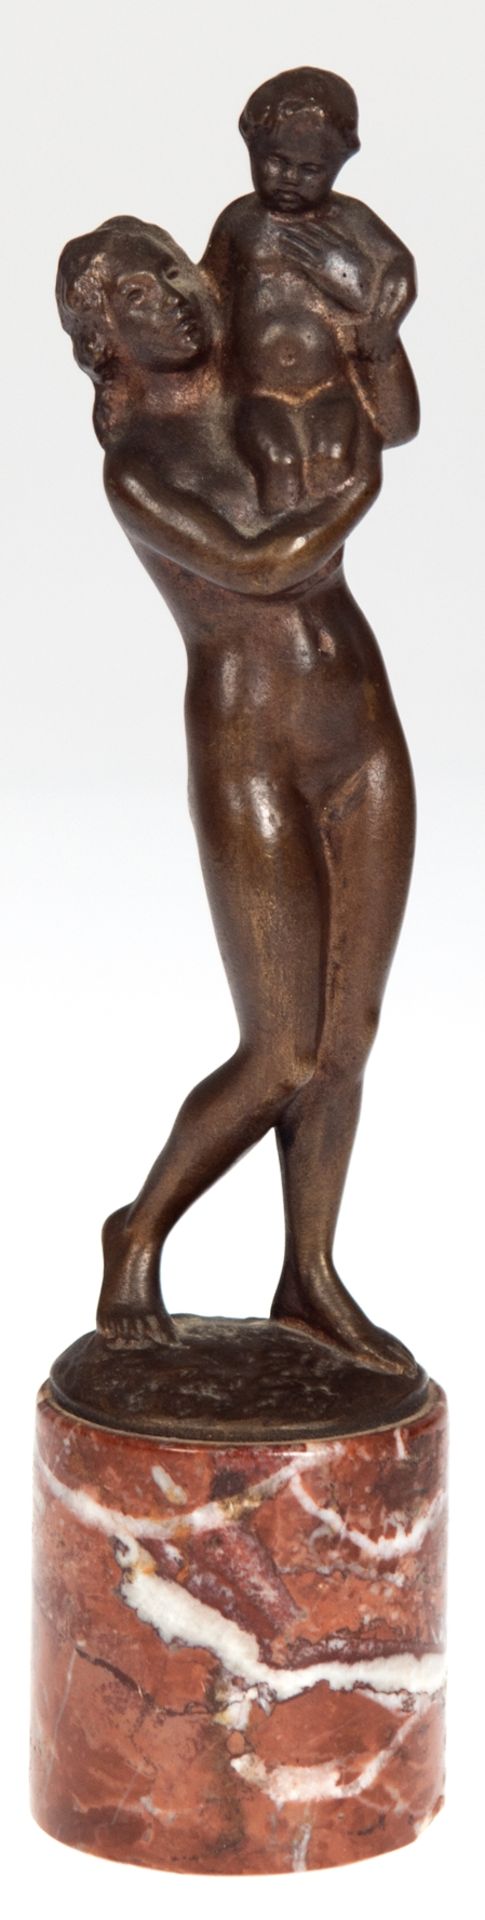 Fritz, Max Daniel Hermann (1873-1948) "Mutter mit Kind", Bronze, braun patiniert, sign., H. 15,5 cm